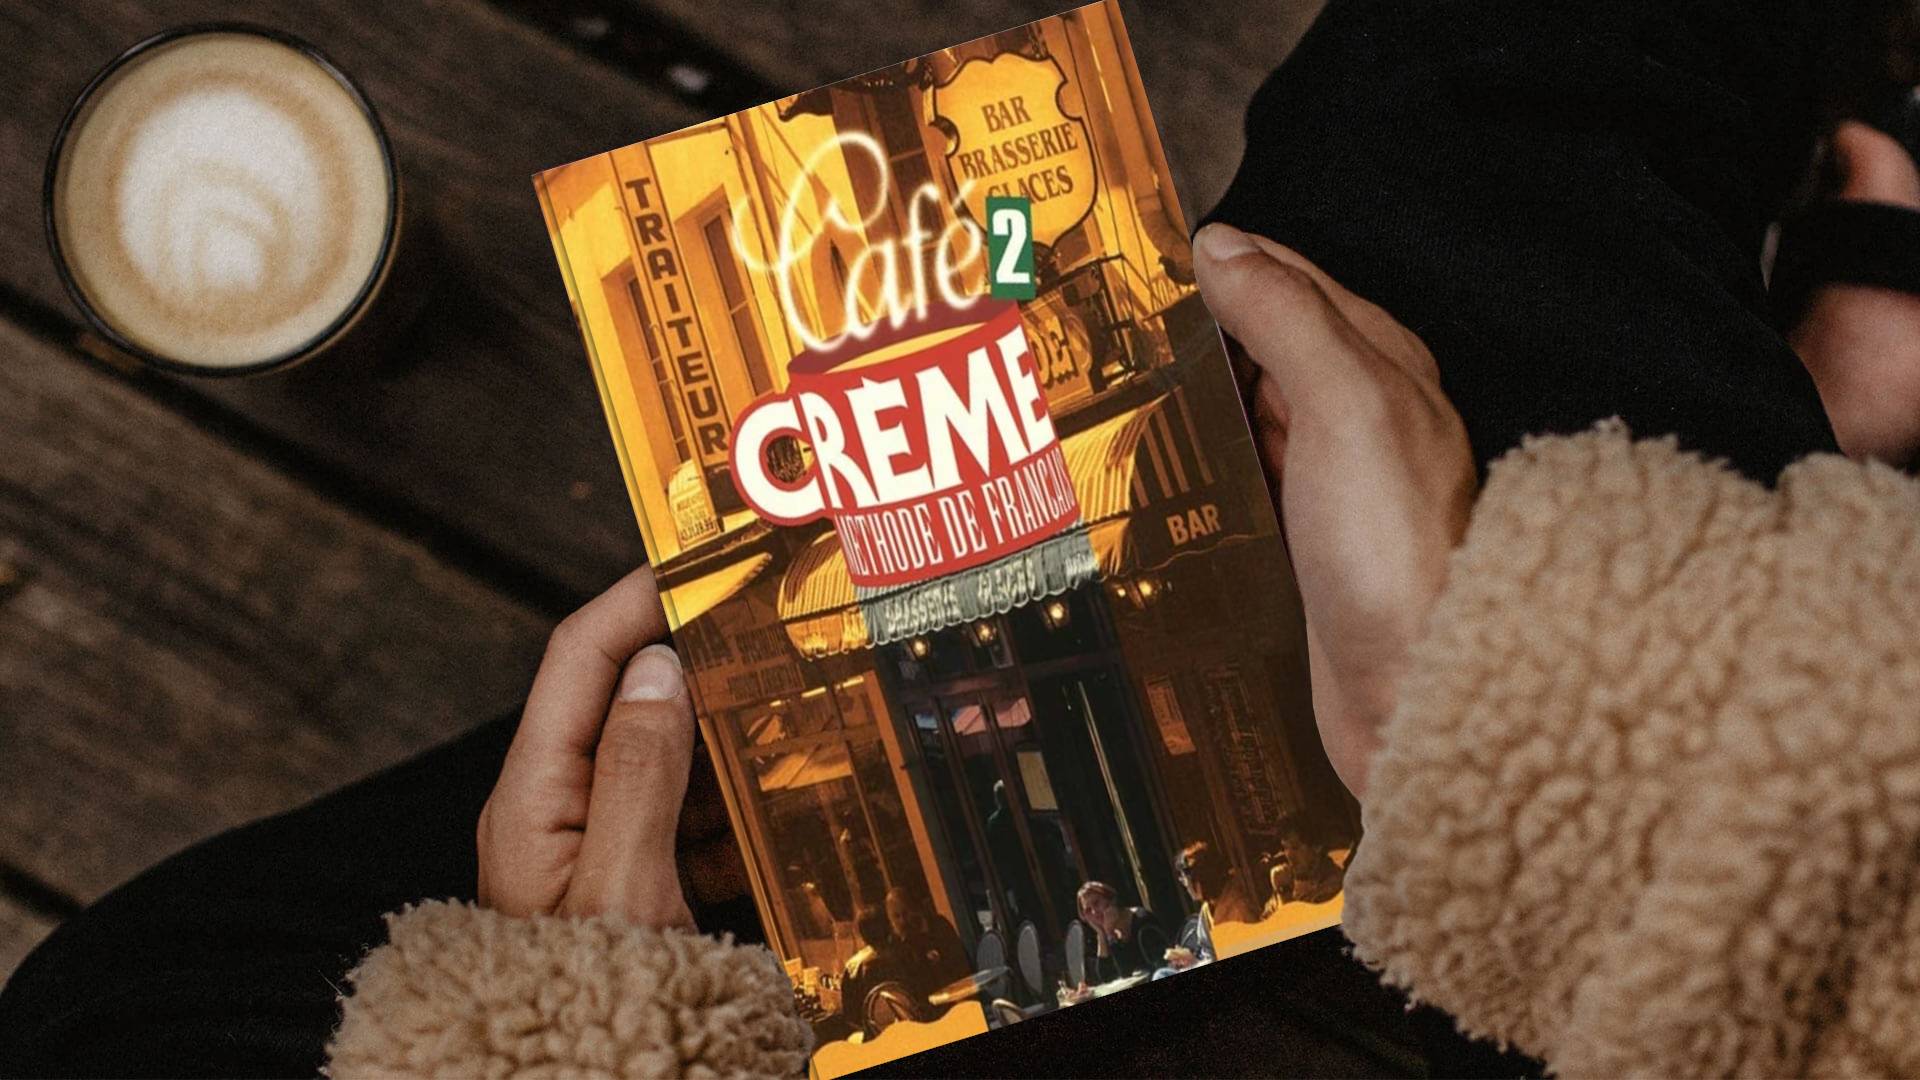 خرید کتاب زبان فرانسوی | فروشگاه اینترنتی کتاب زبان فرانسوی | Cafe Creme 2 | کافه کرم دو